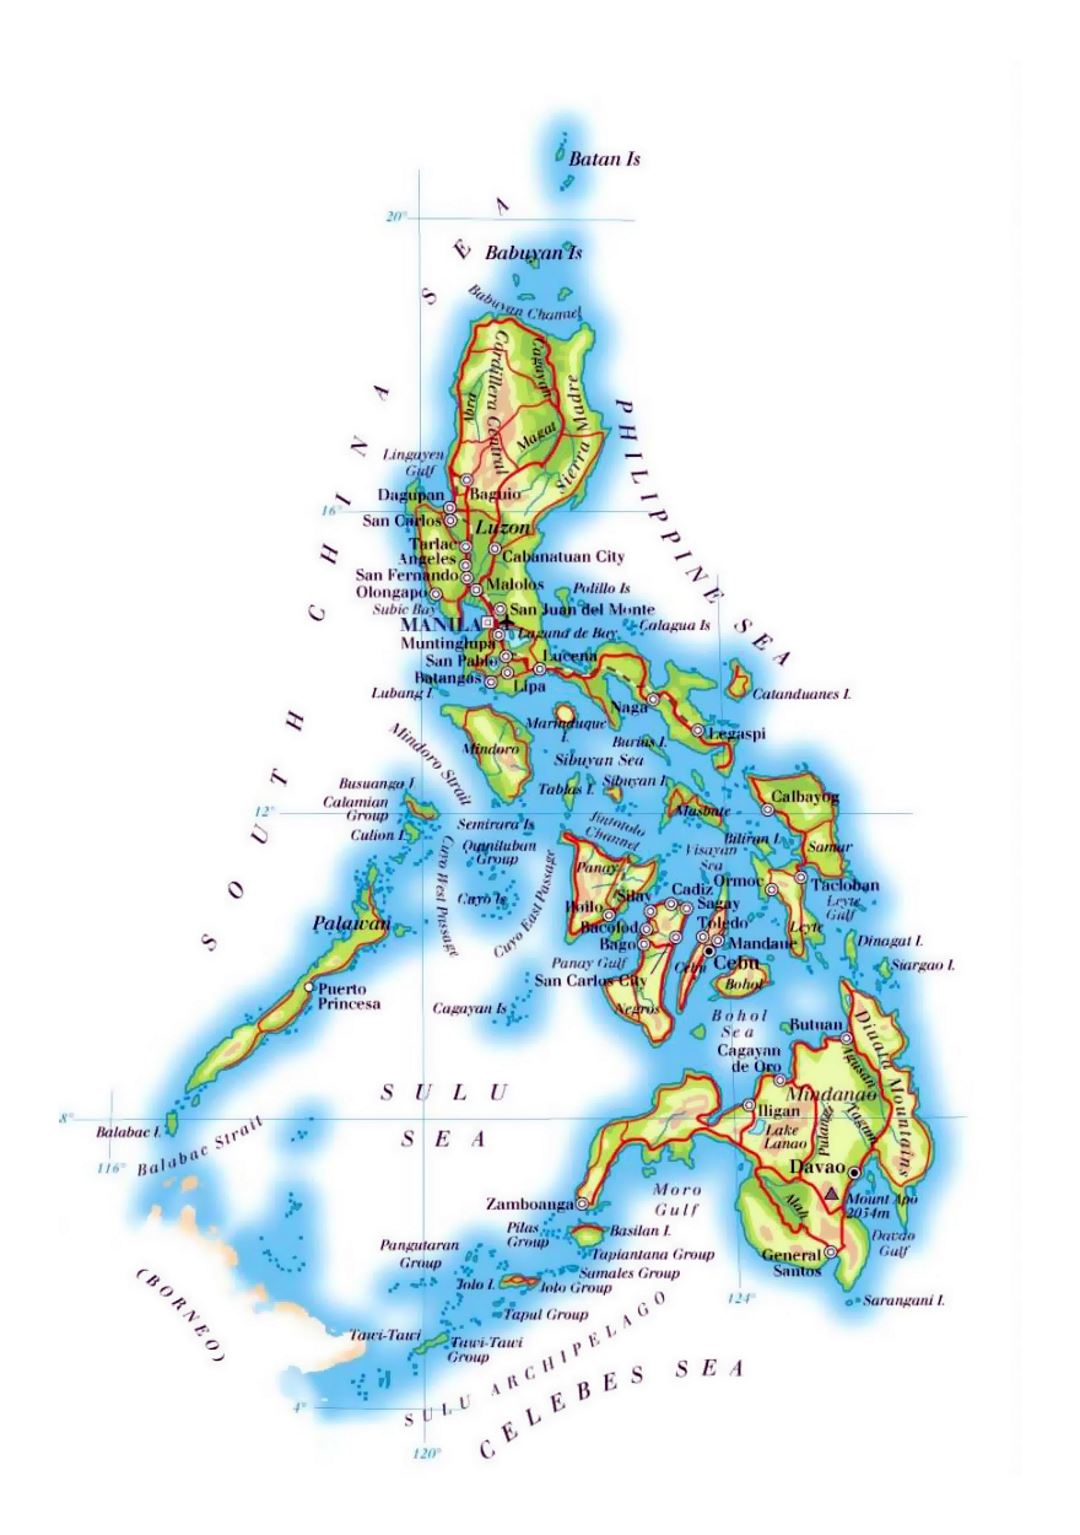 Detallado mapa de elevación de Filipinas con carreteras, ferrocarriles, principales ciudades y aeropuertos